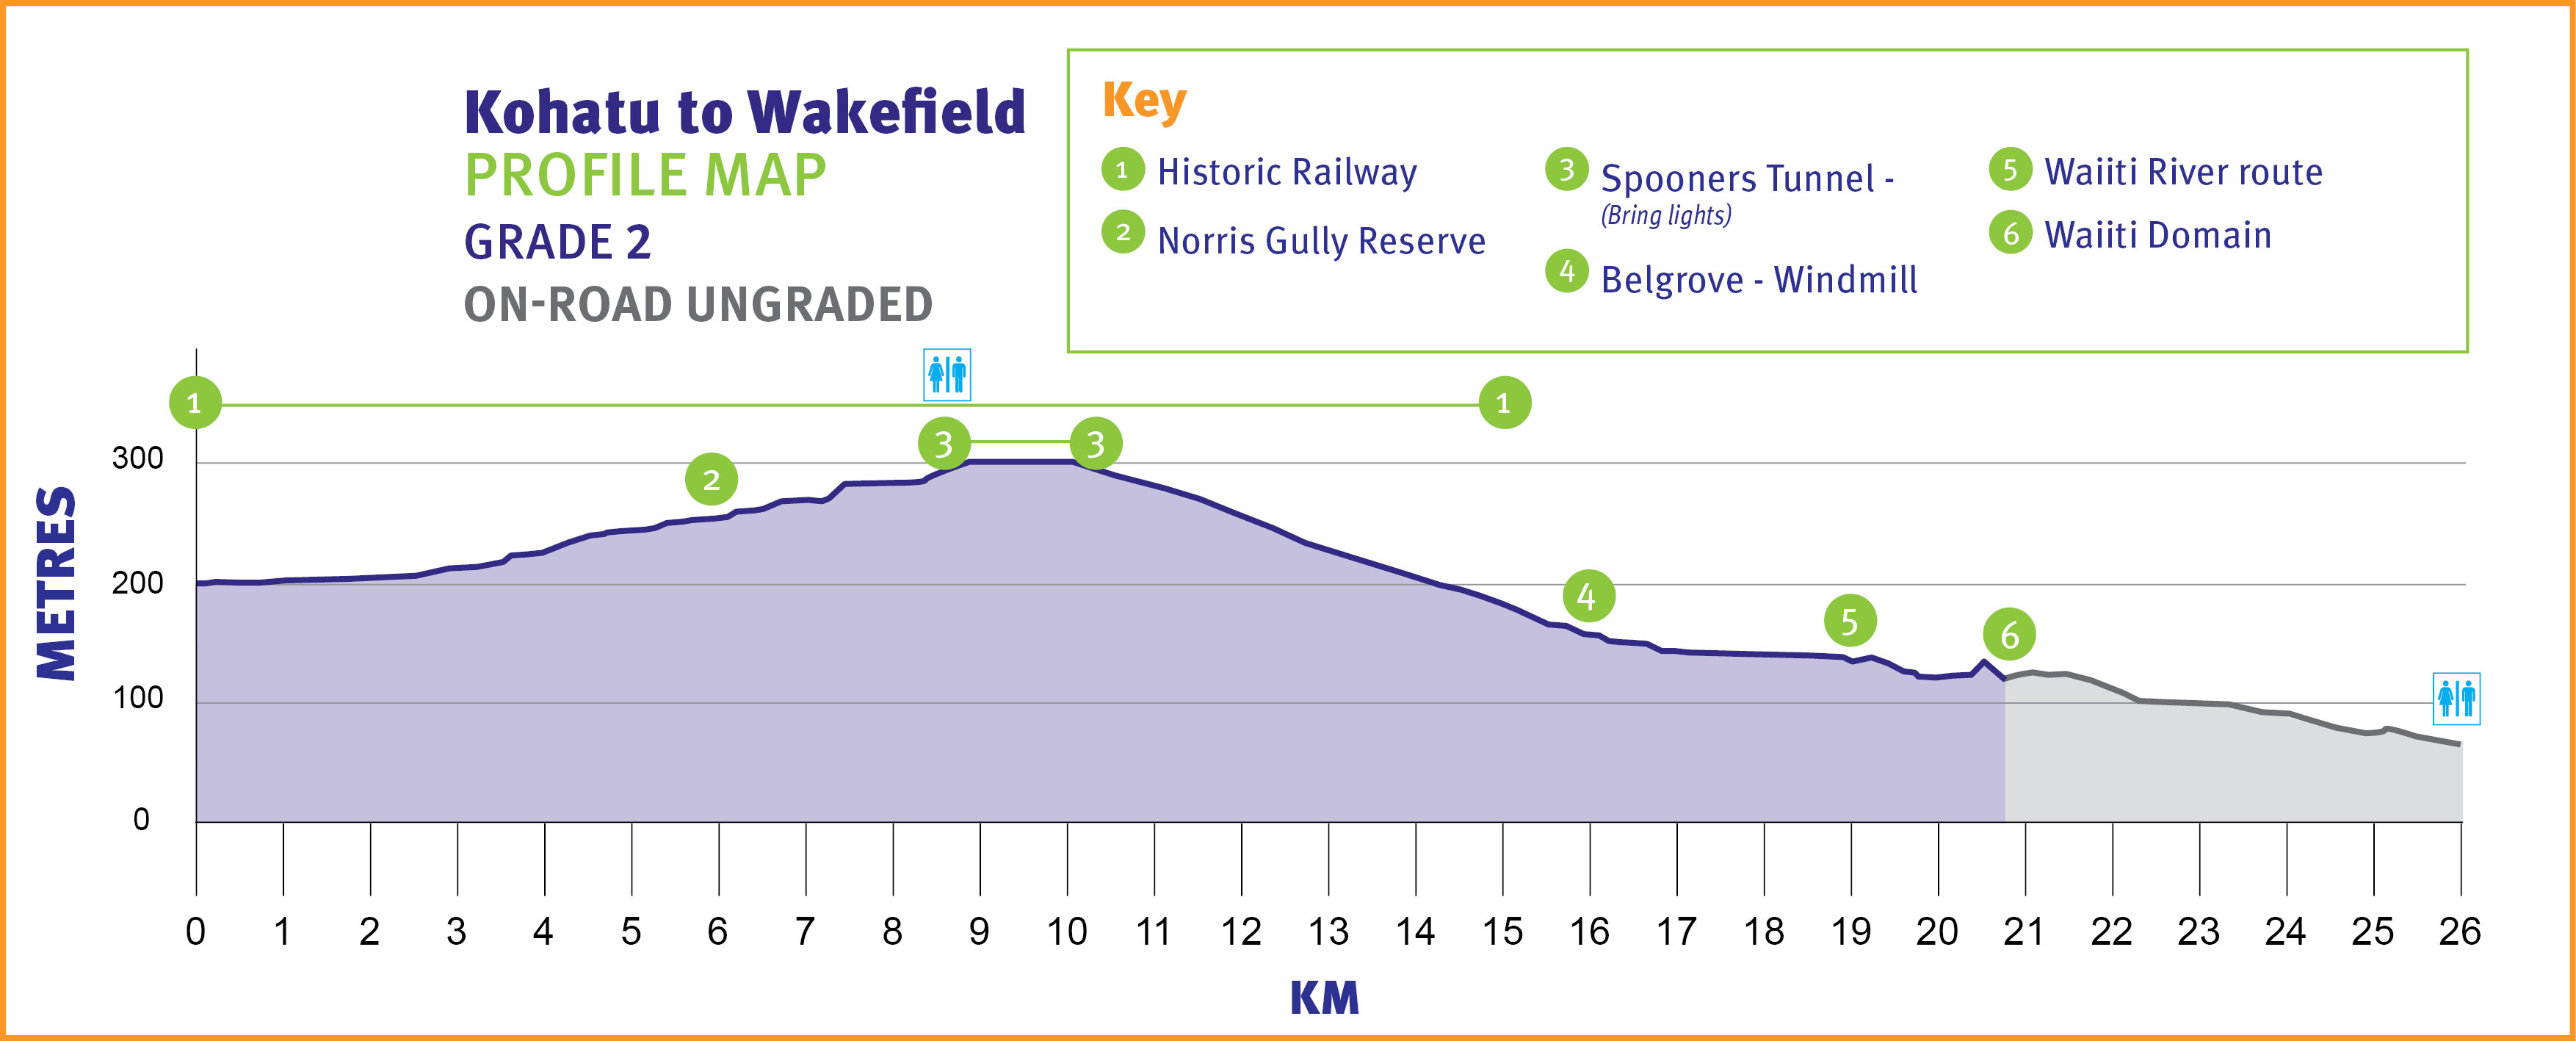 Kohatu to Wakefield Profile Map